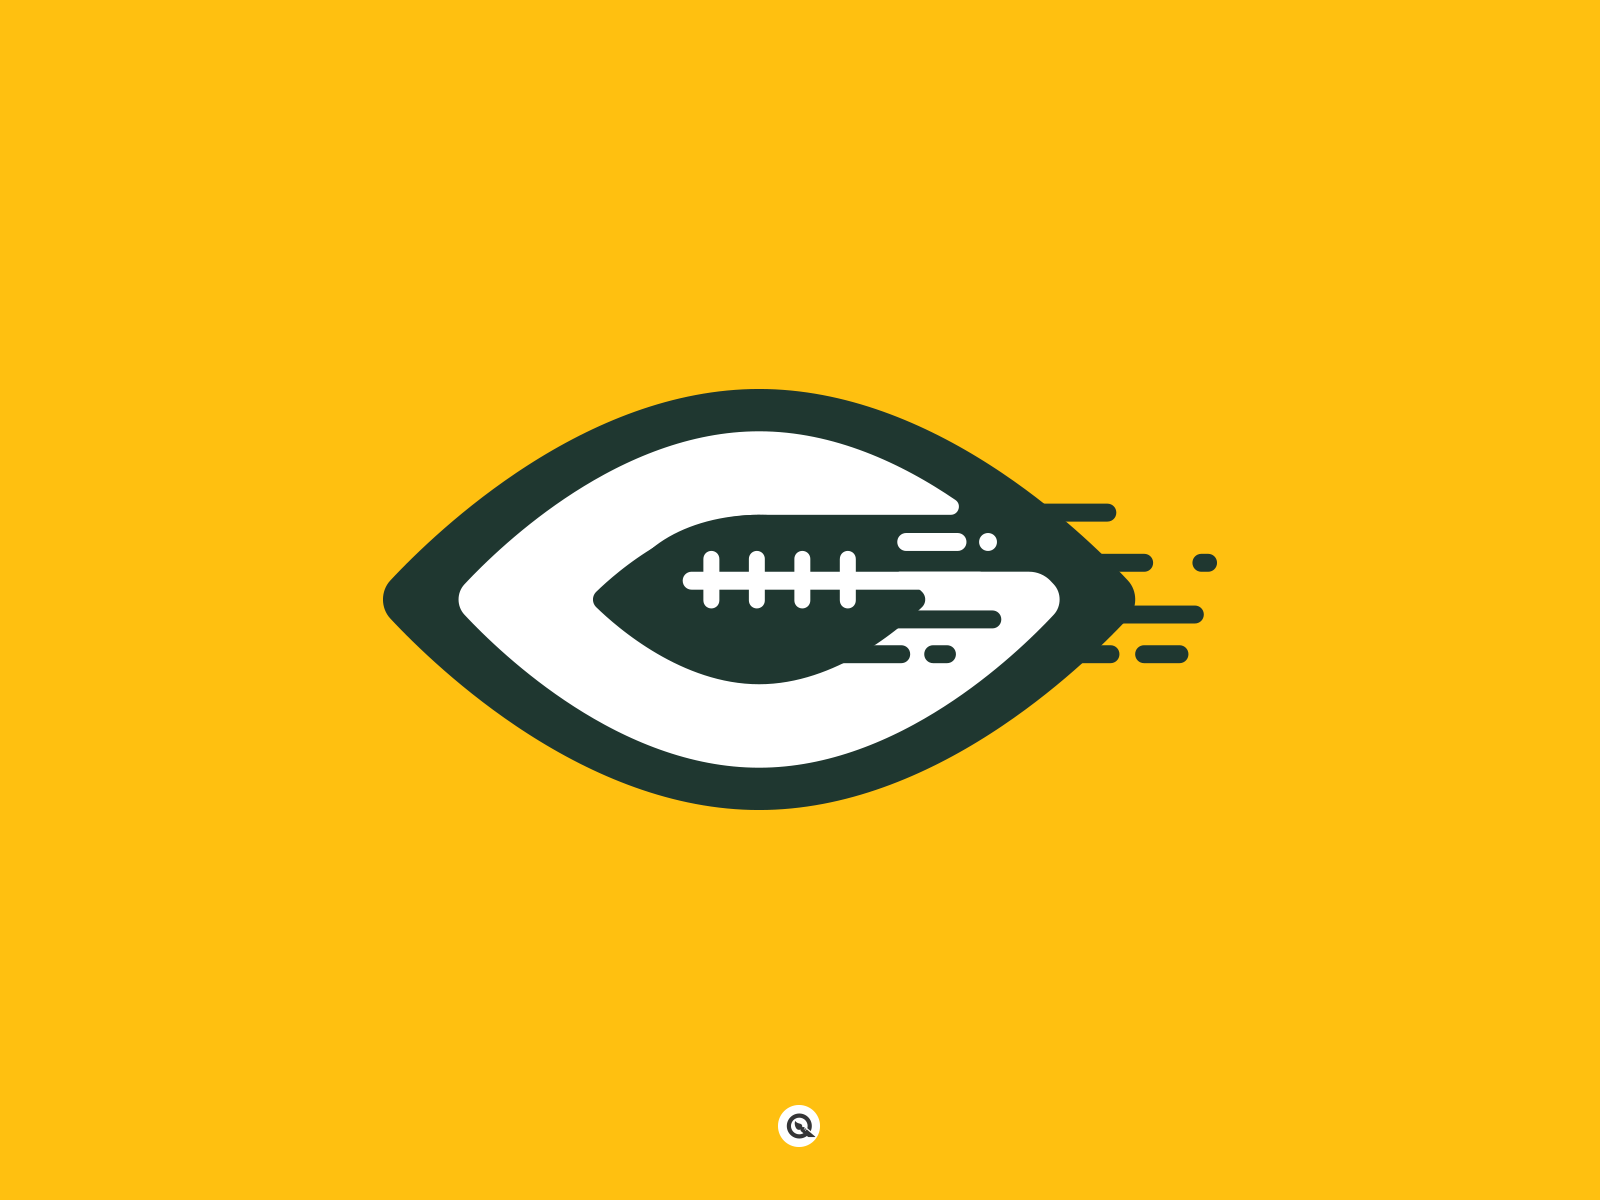 logo dei Green Bay Packers